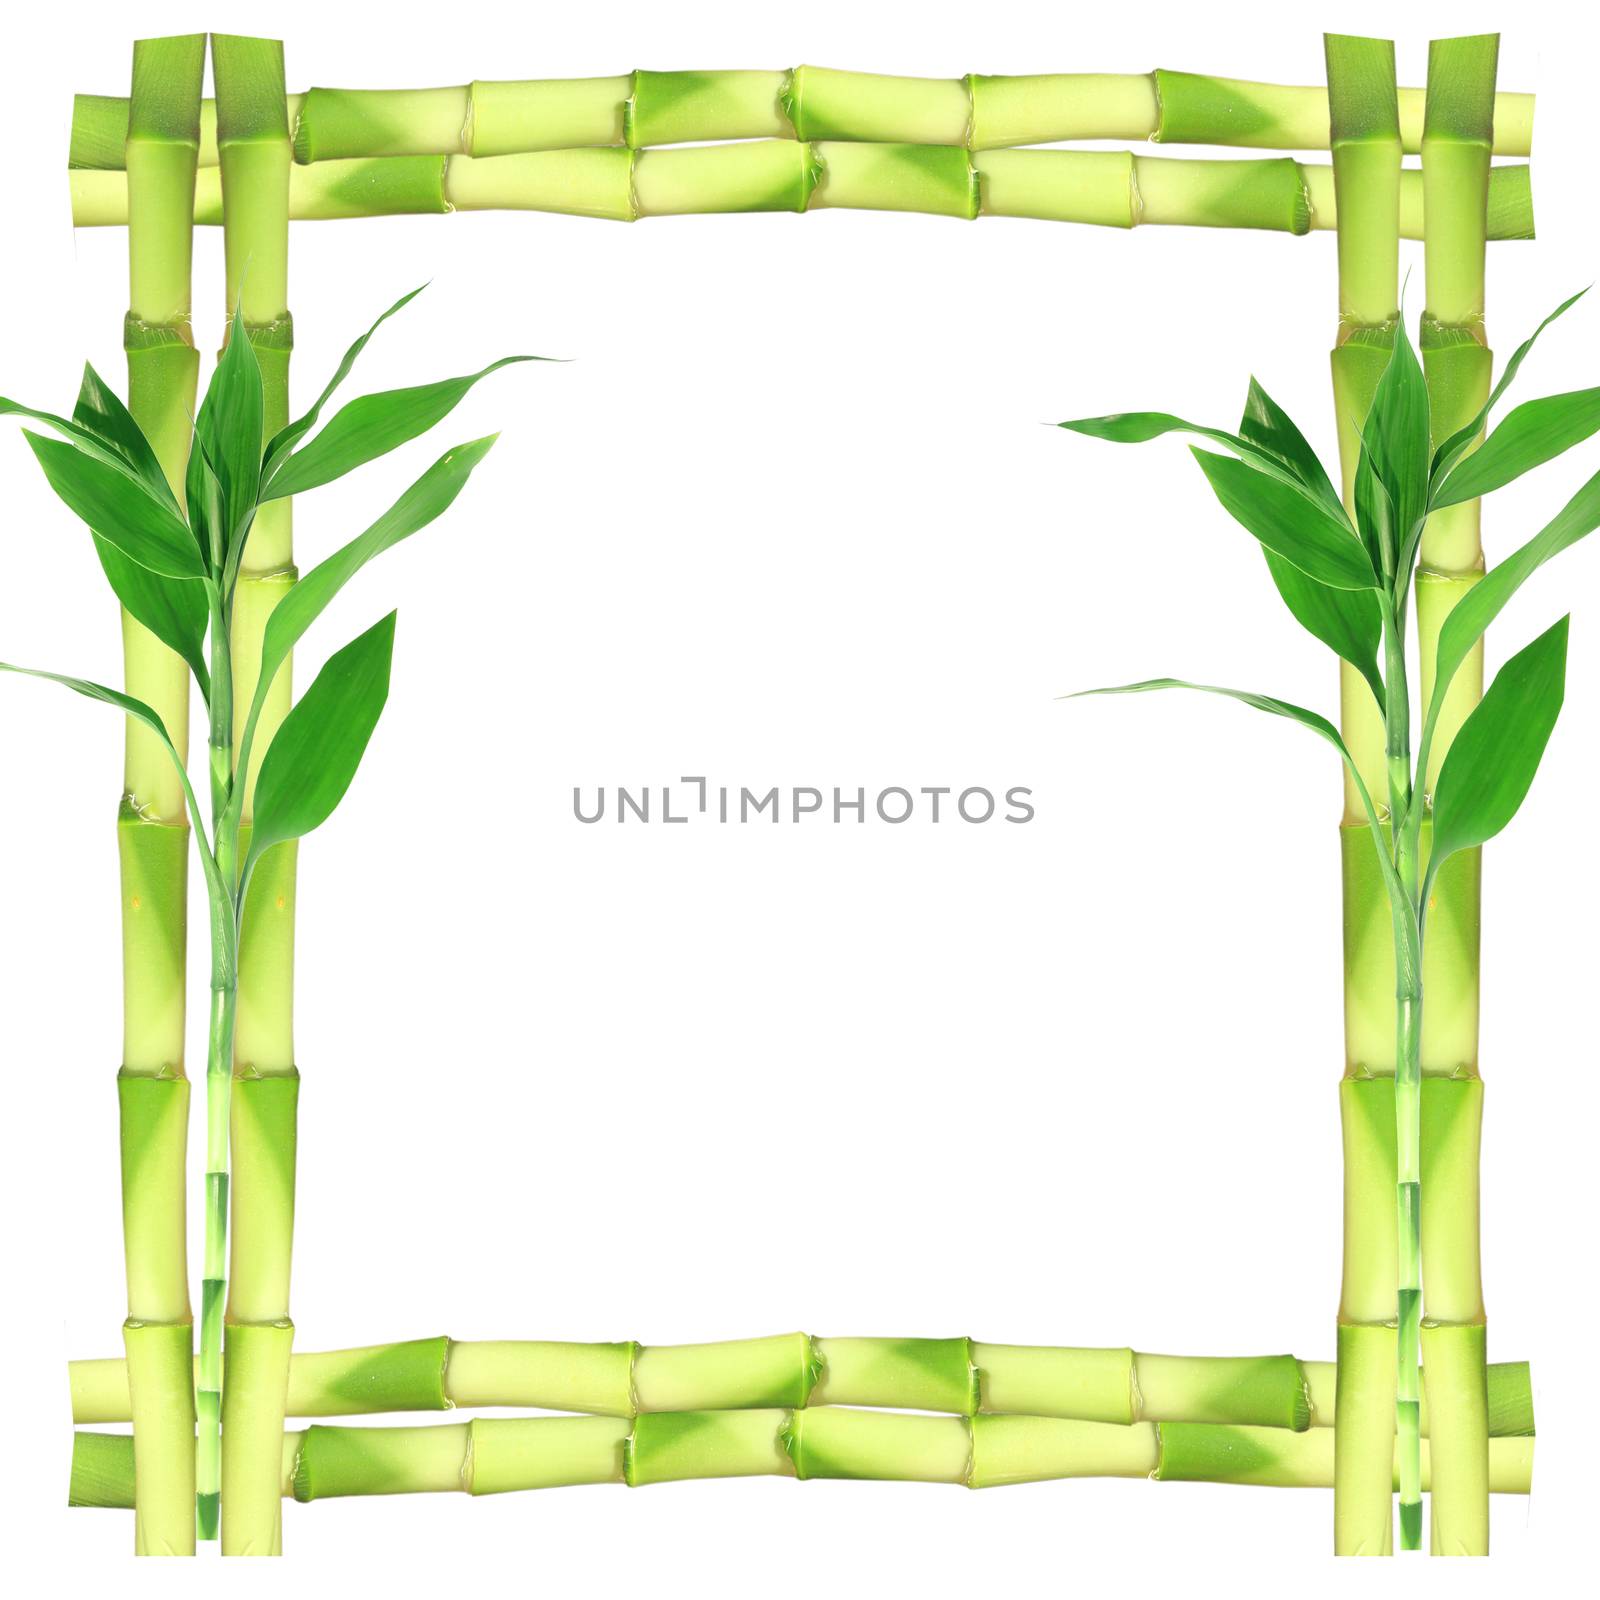 Bamboo frame by wyoosumran